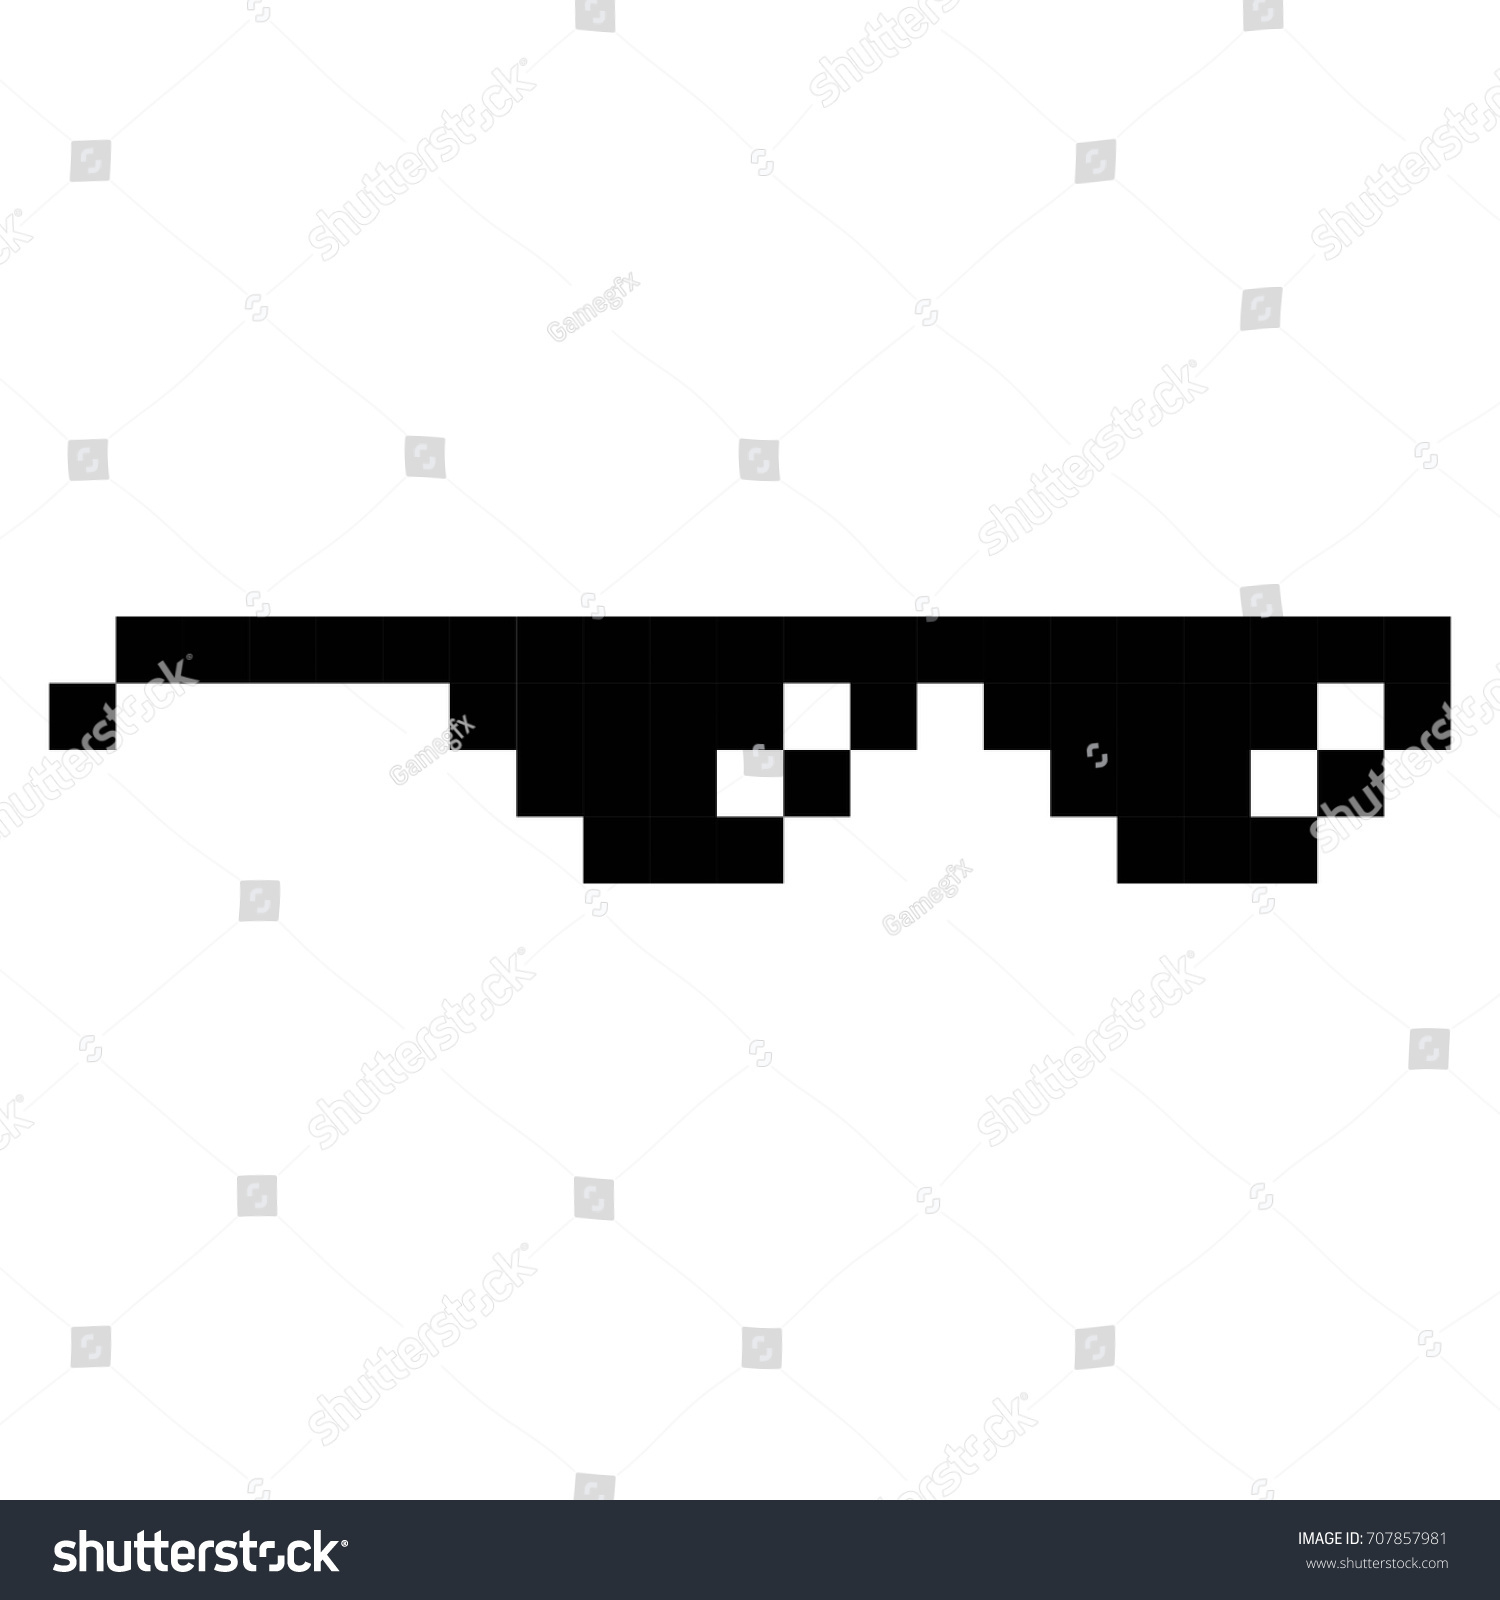 Image Vectorielle De Stock De Les Lunettes Geek Pixel Art intérieur Jeux Dessin Pixel